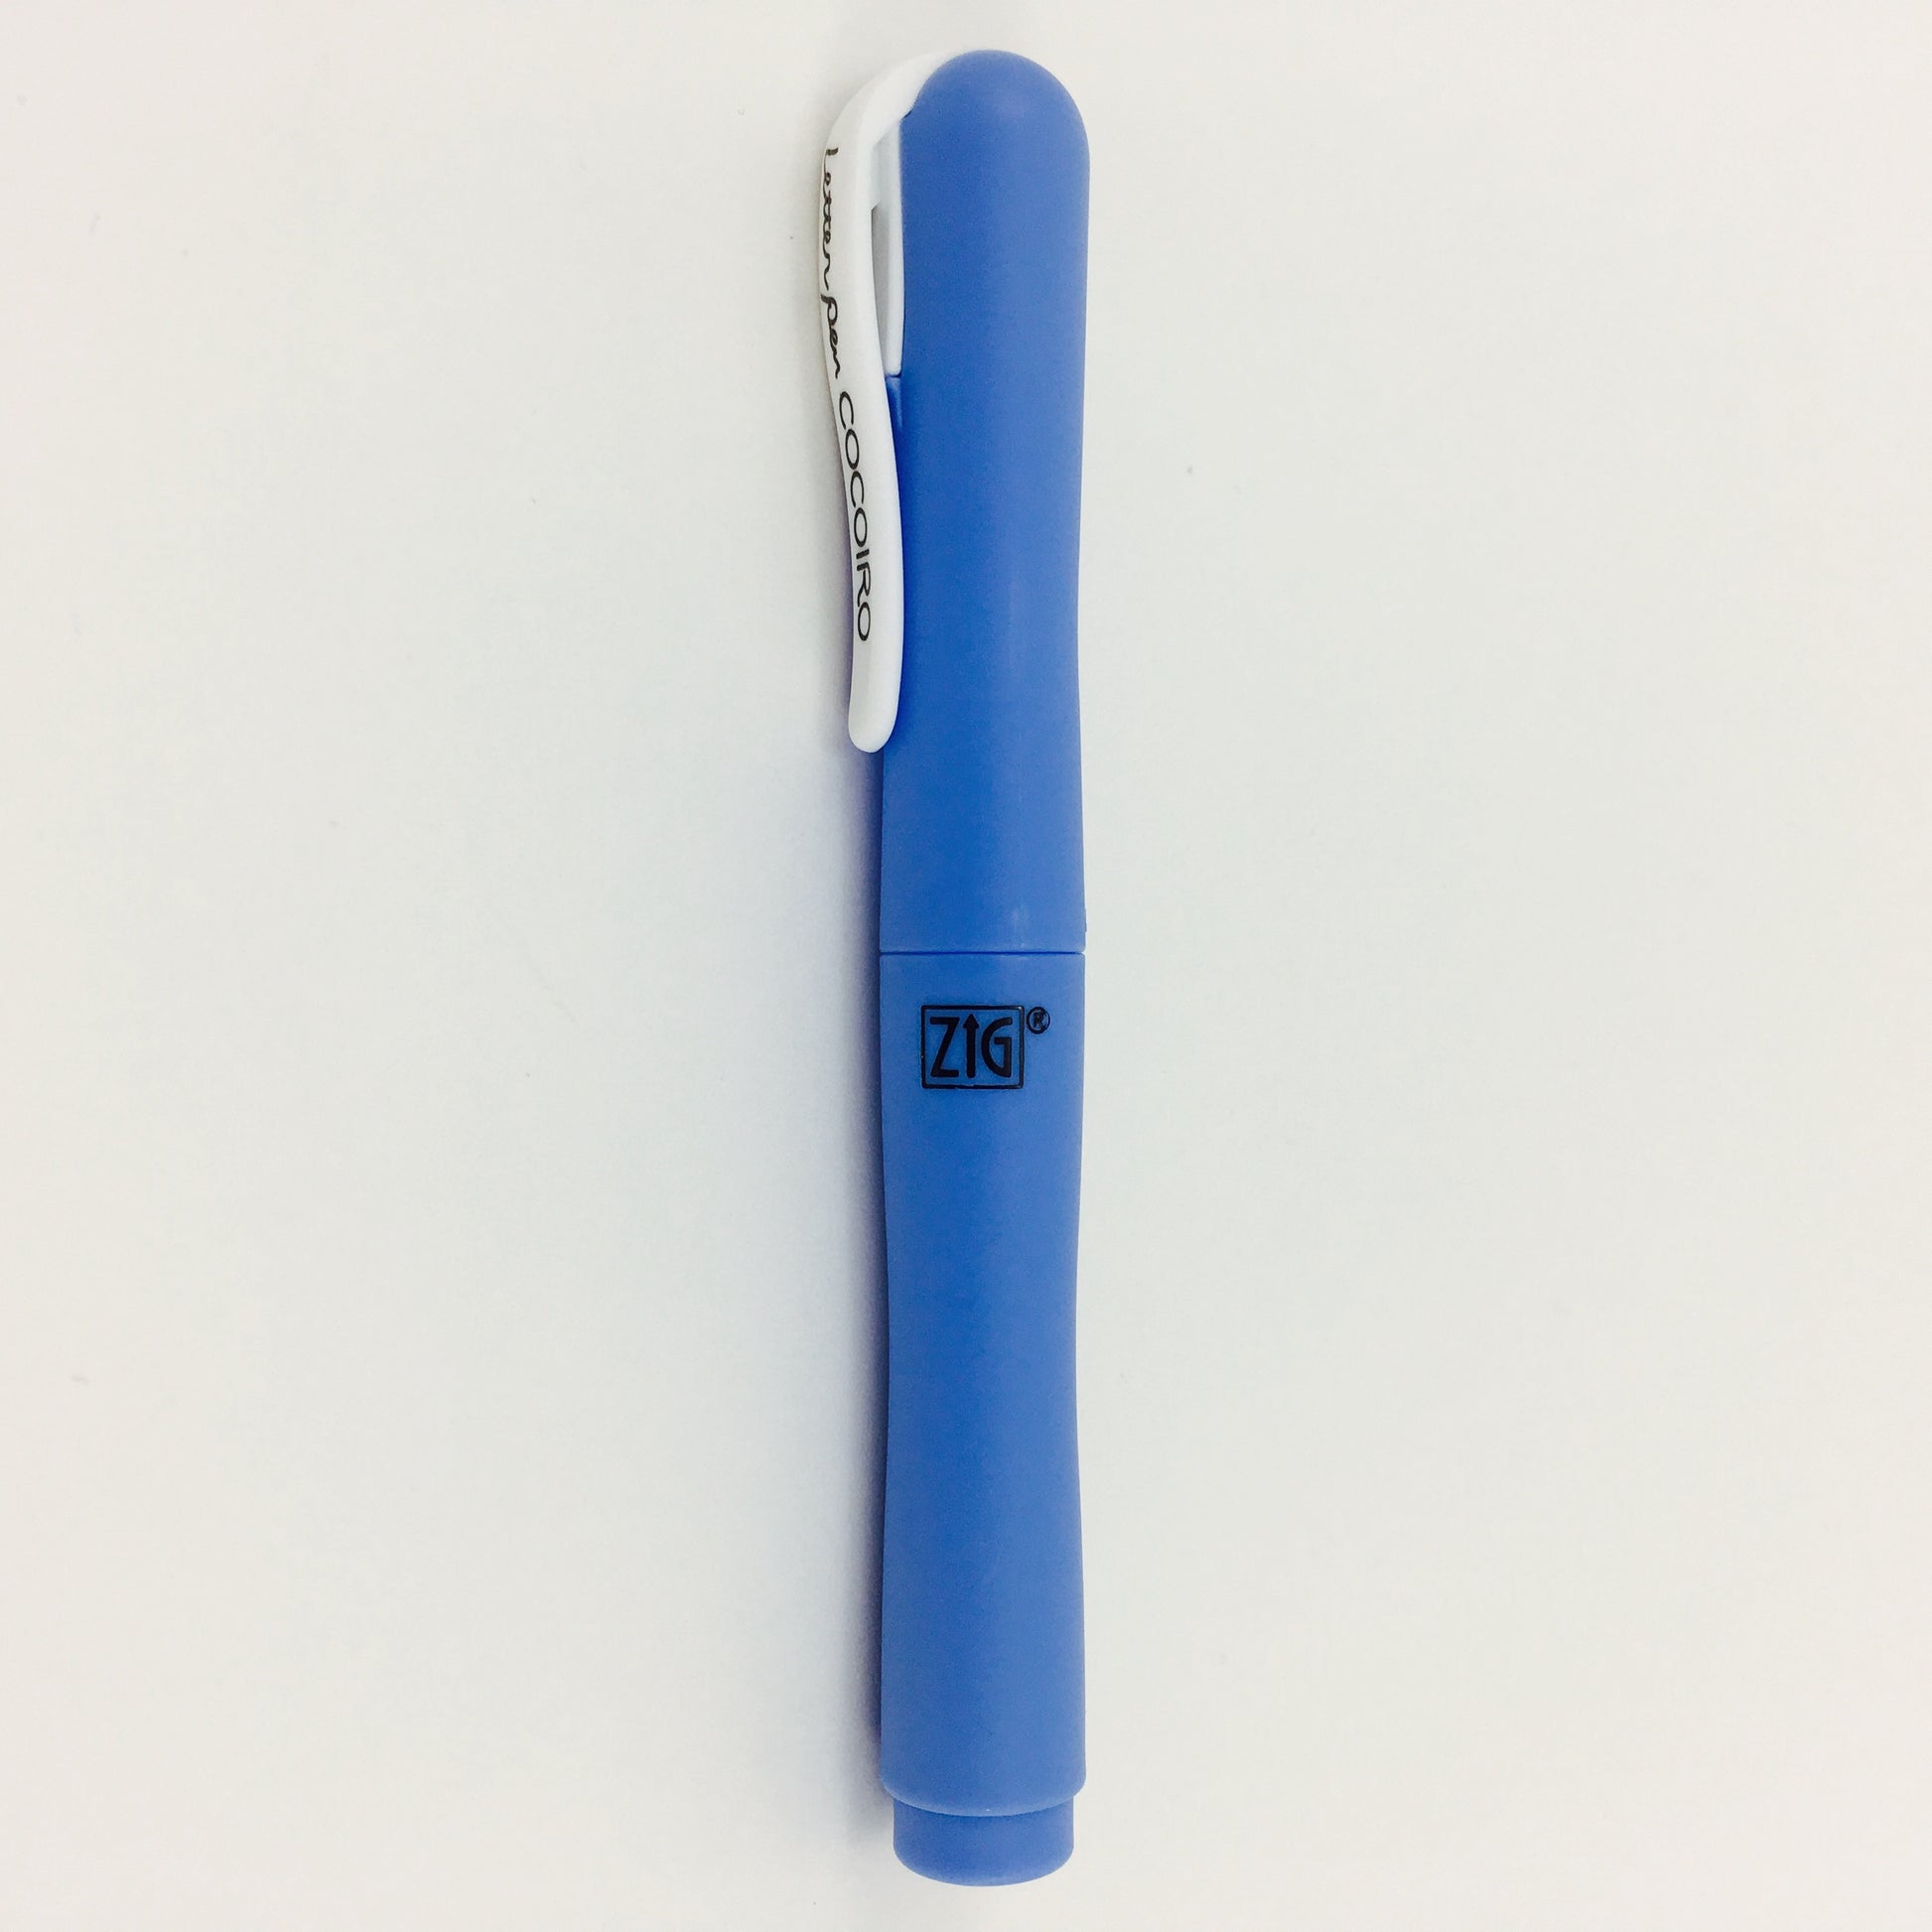 Zig by Kuretake "Cocoiro" Pen Body - Blue Dusk by Kuretake - K. A. Artist Shop